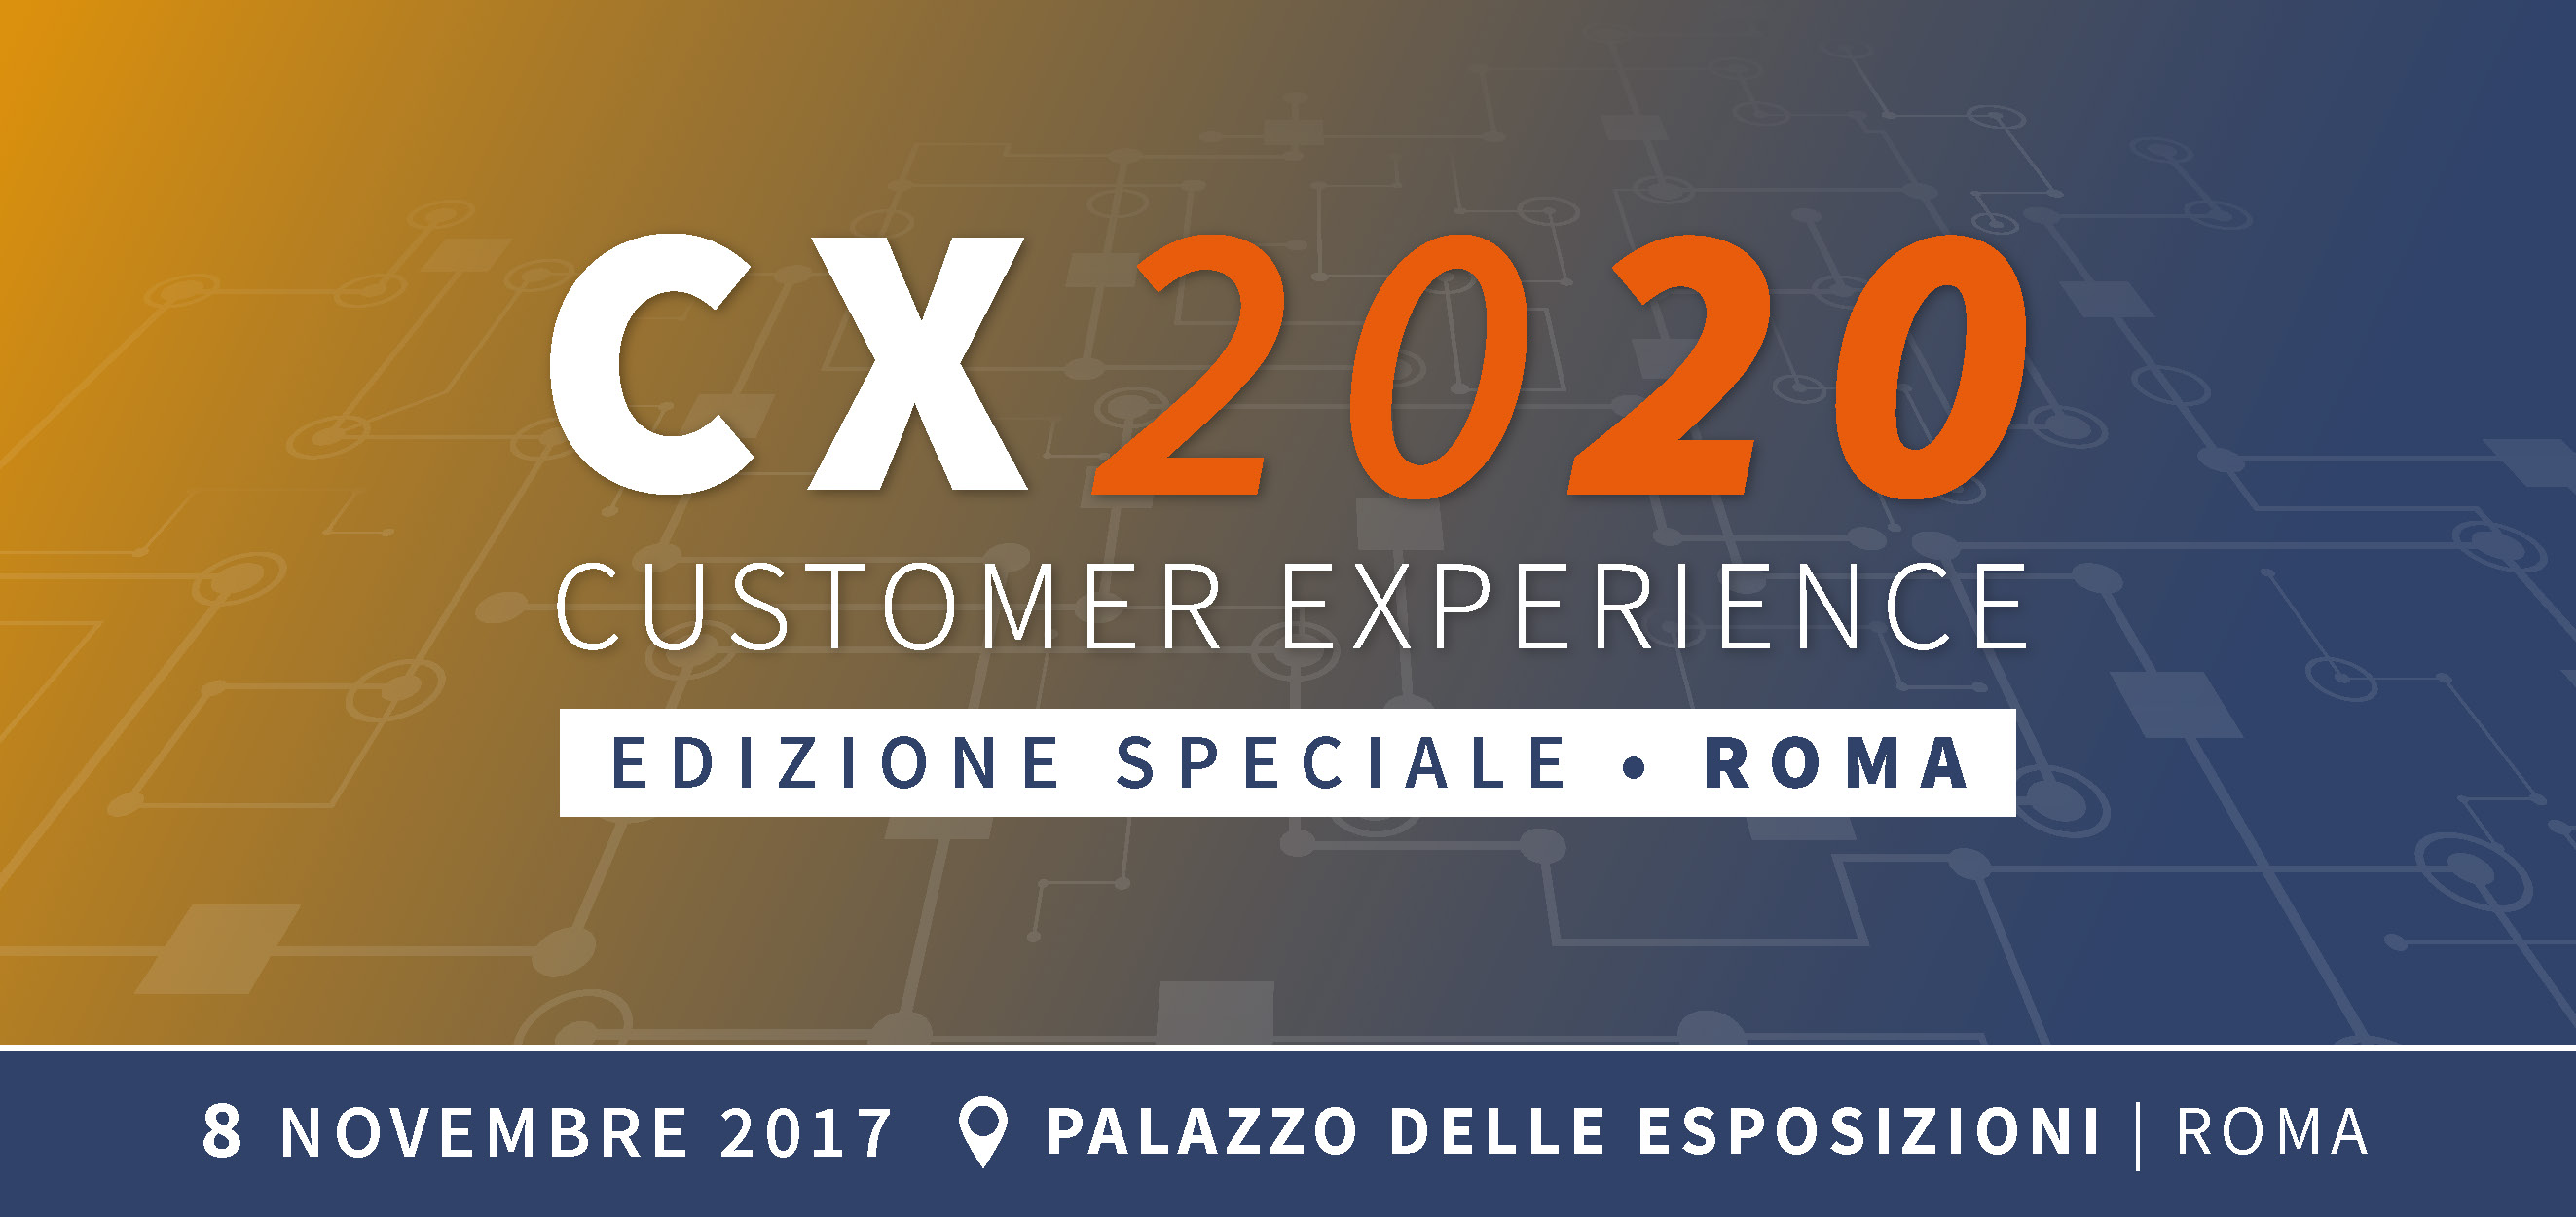 ATTI CONVEGNO CUSTOMER EXPERIENCE 2020 – EDIZIONE SPECIALE ROMA